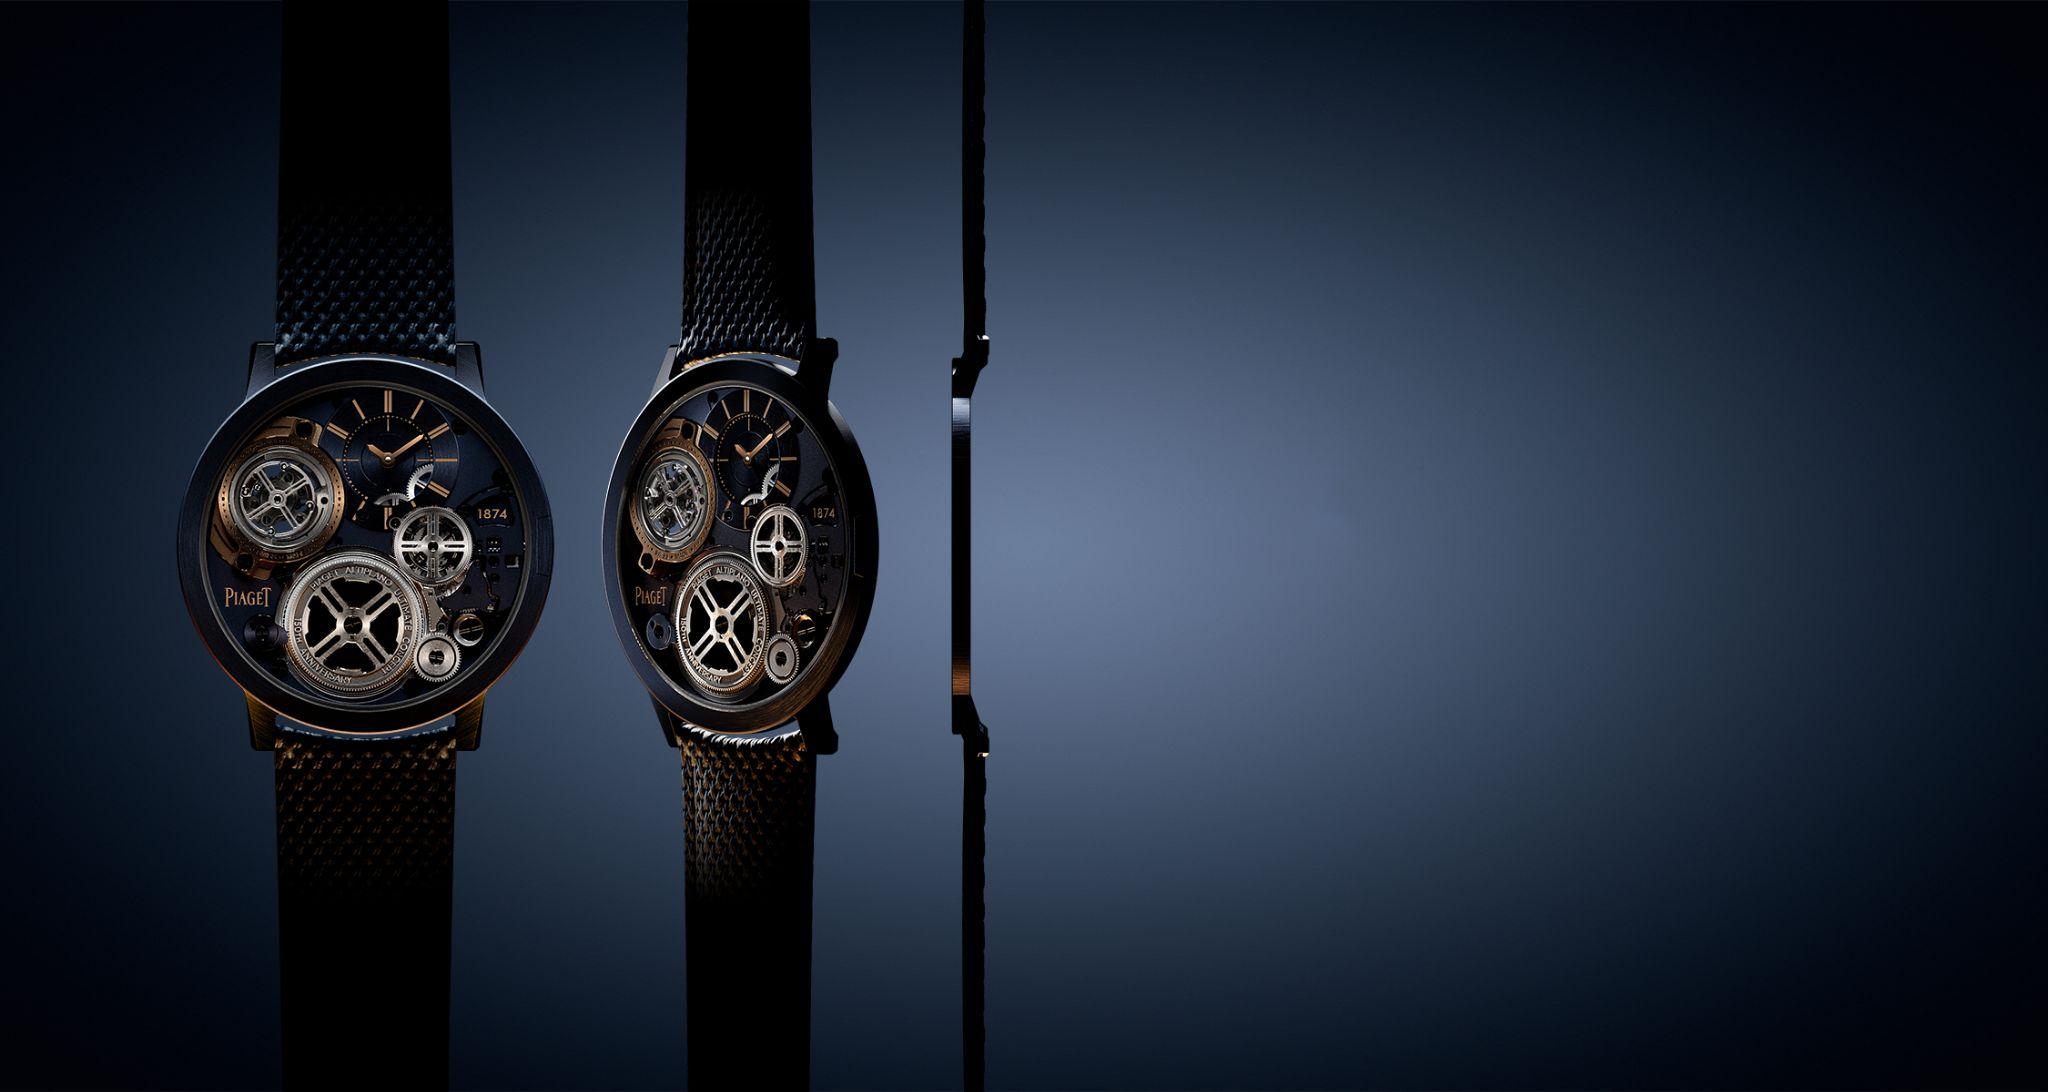 Piaget A.U.C Tourbillon: Giới hạn nào cho đồng hồ đeo tay? 1